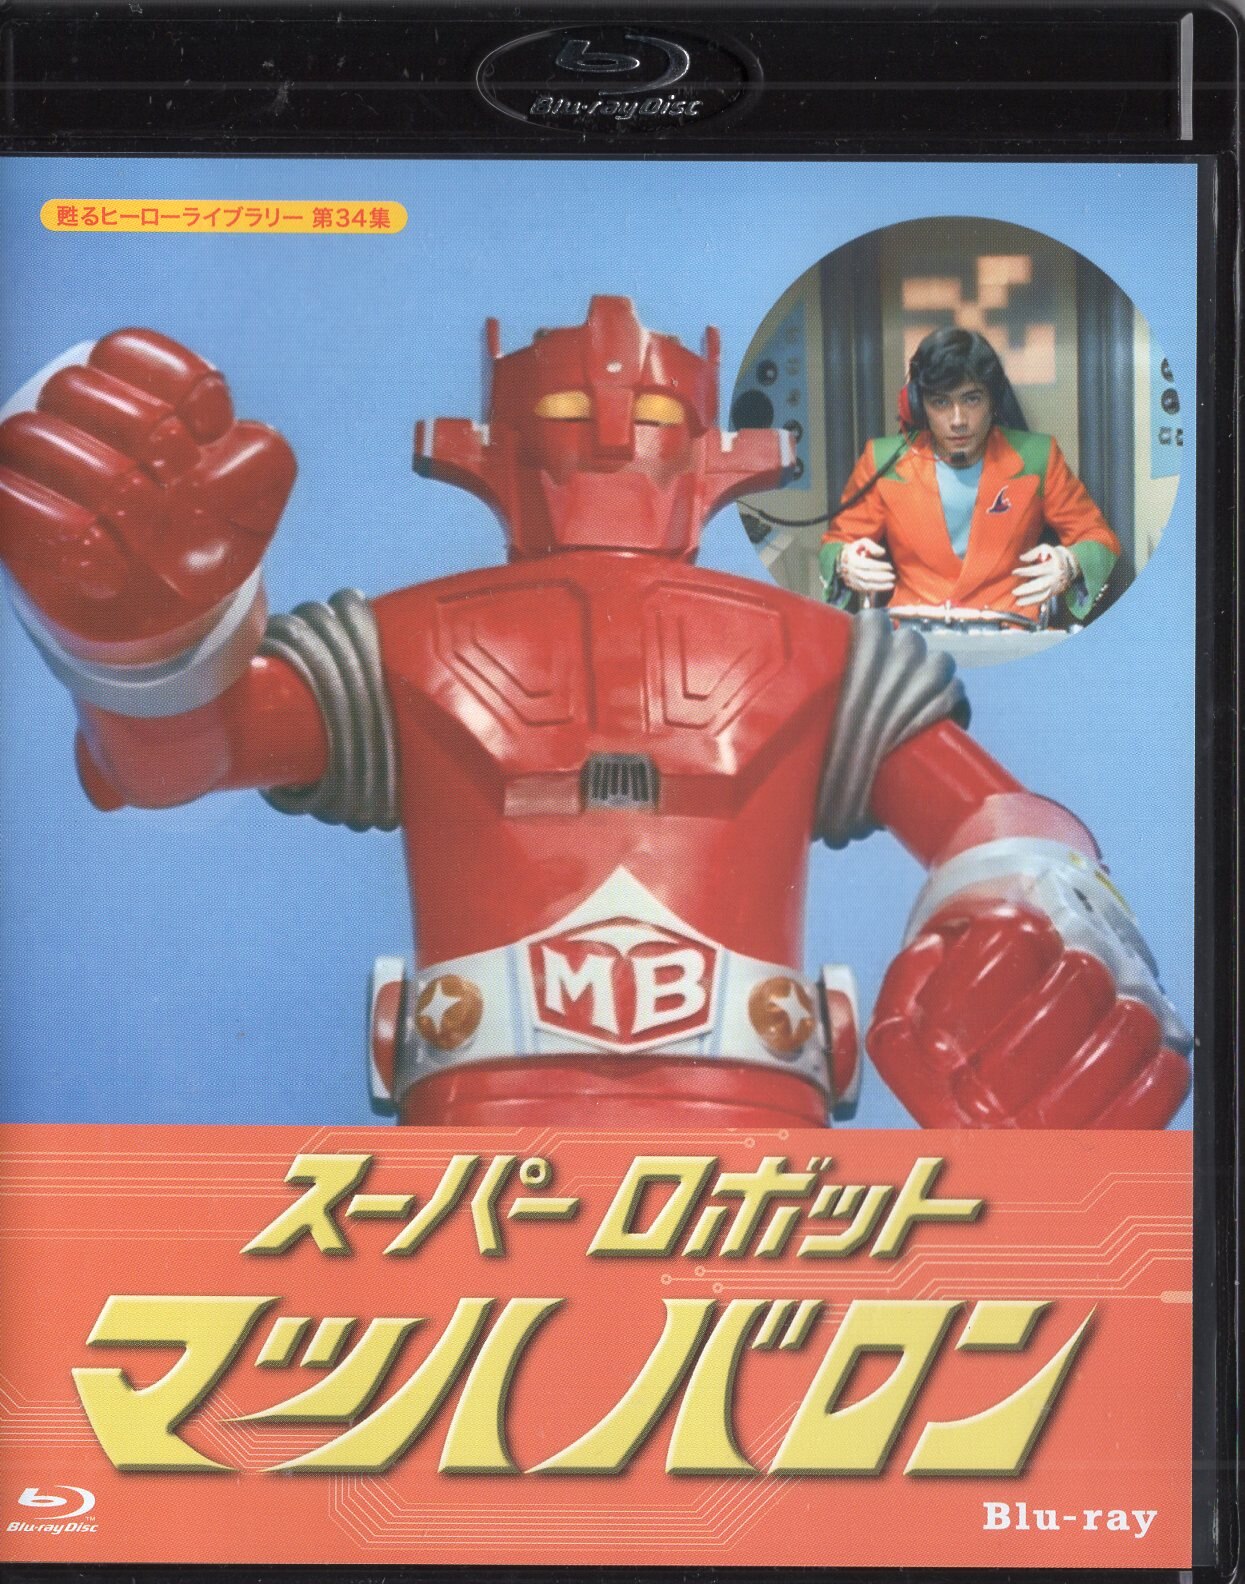 特撮Blu-ray スーパーロボット マッハバロン/甦るヒーローライブラリー ...